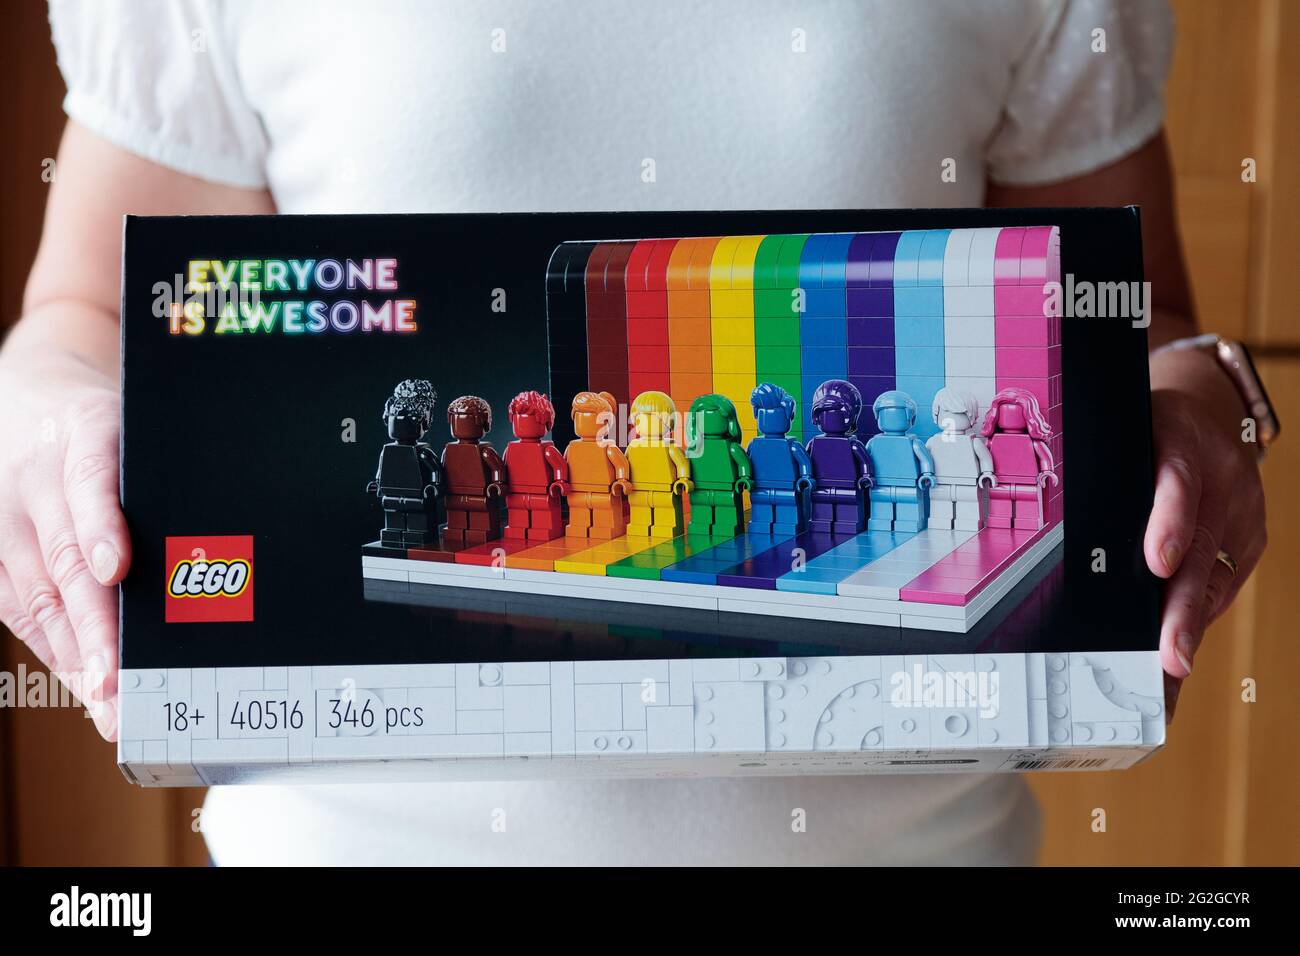 Tout le monde est génial, mis par Lego. Un nouvel ensemble coloré célébrant la diversité, la positivité et la gentillesse avec onze personnages et un mur de briques de couleur Banque D'Images